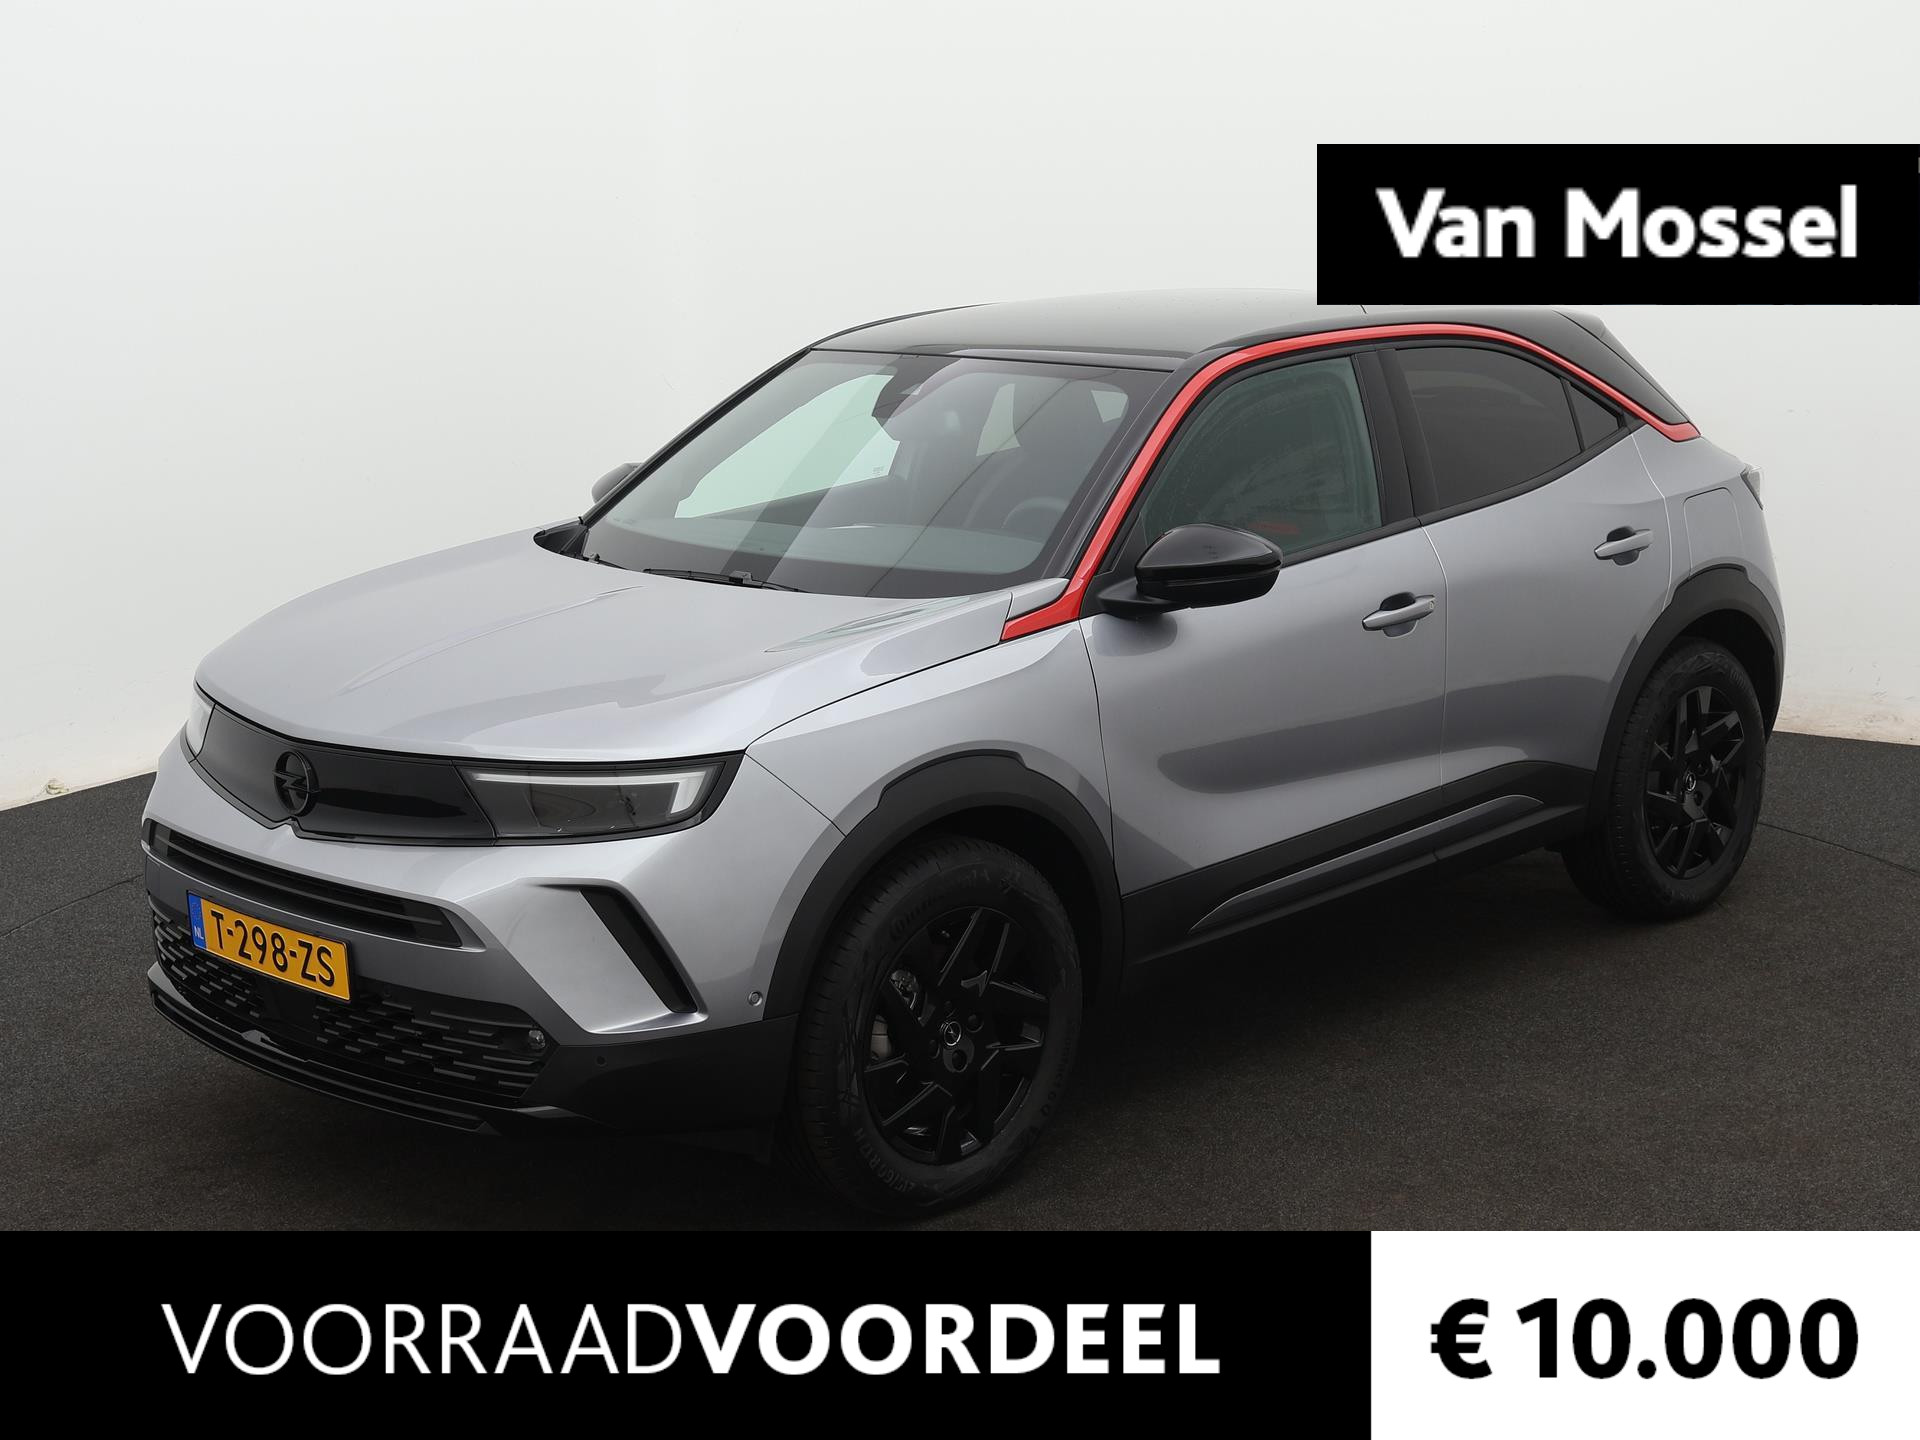 Opel Mokka-e Level 4 50 kWh || VAN MOSSEL VOORRAADVOORDEEL ||